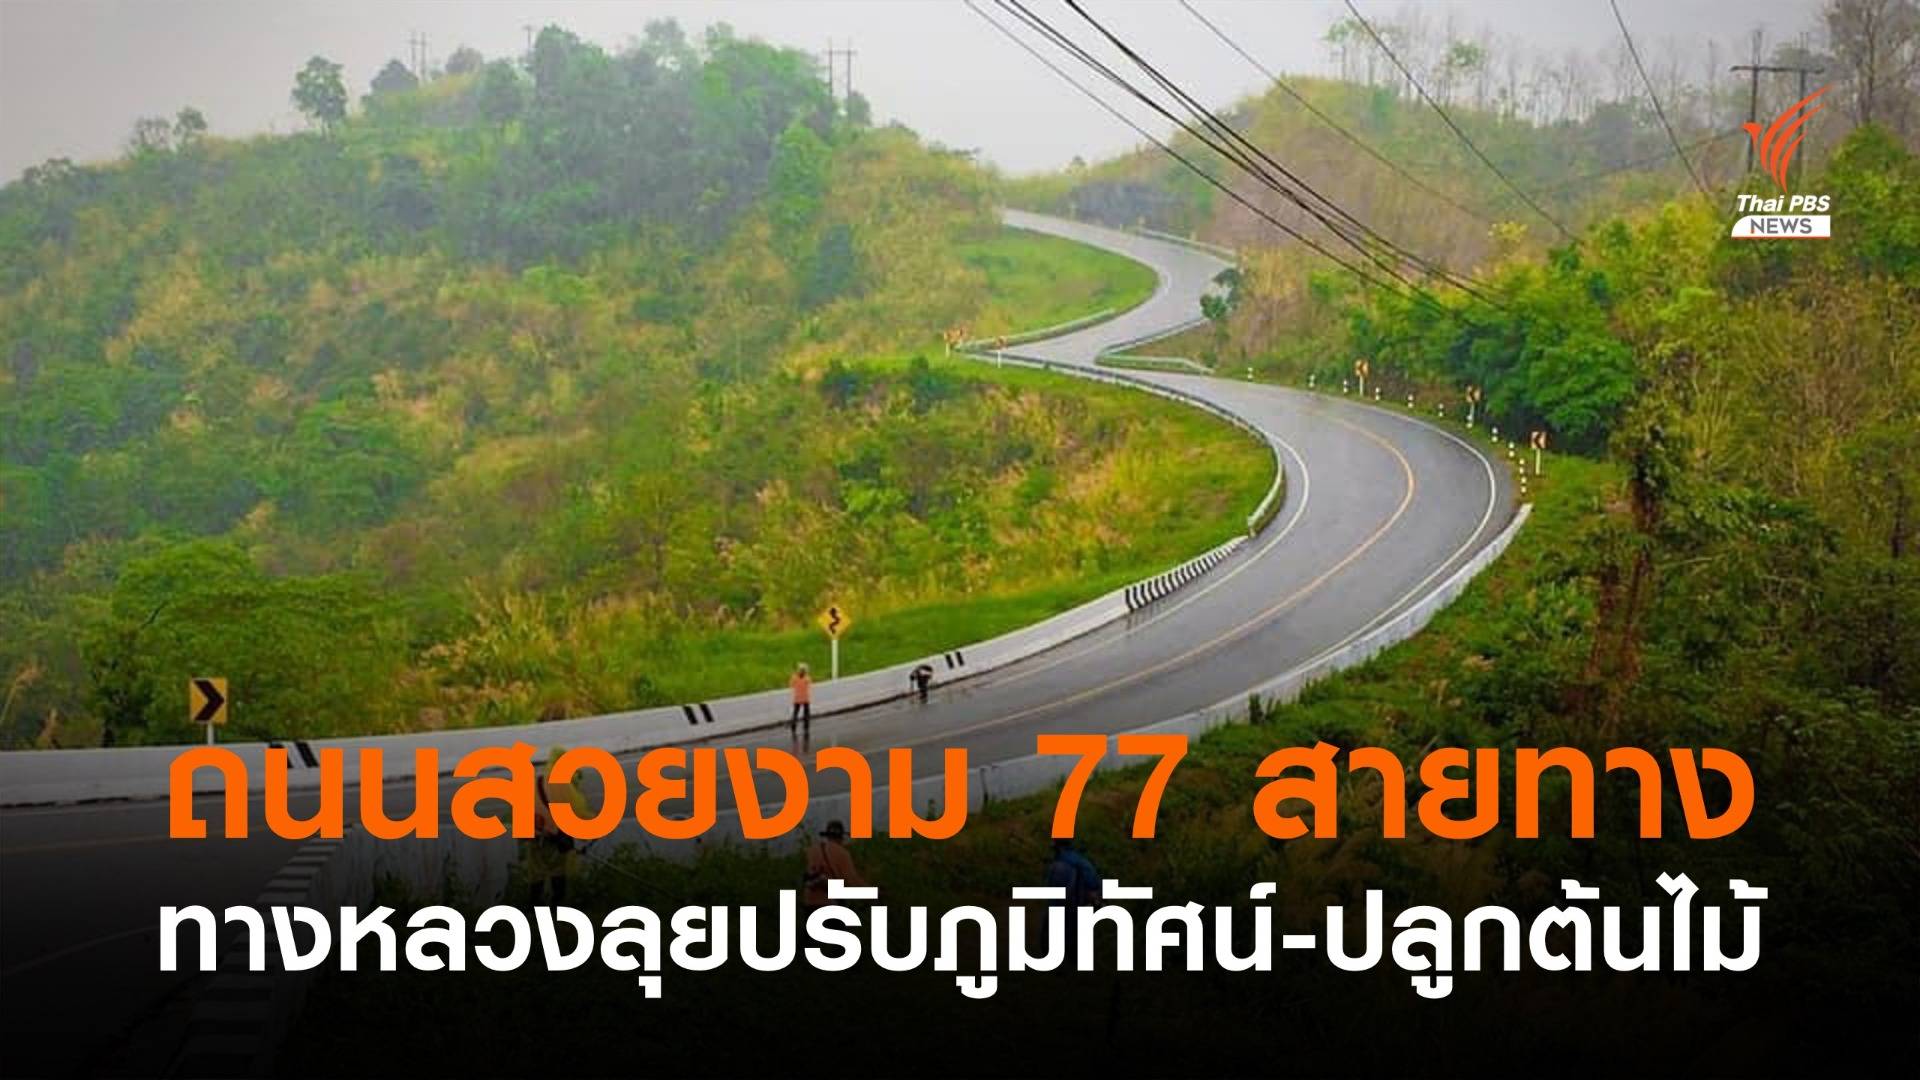 ทางหลวงเดินหน้า "ถนนสวยงาม 77 สายทาง" ทั่วไทย 